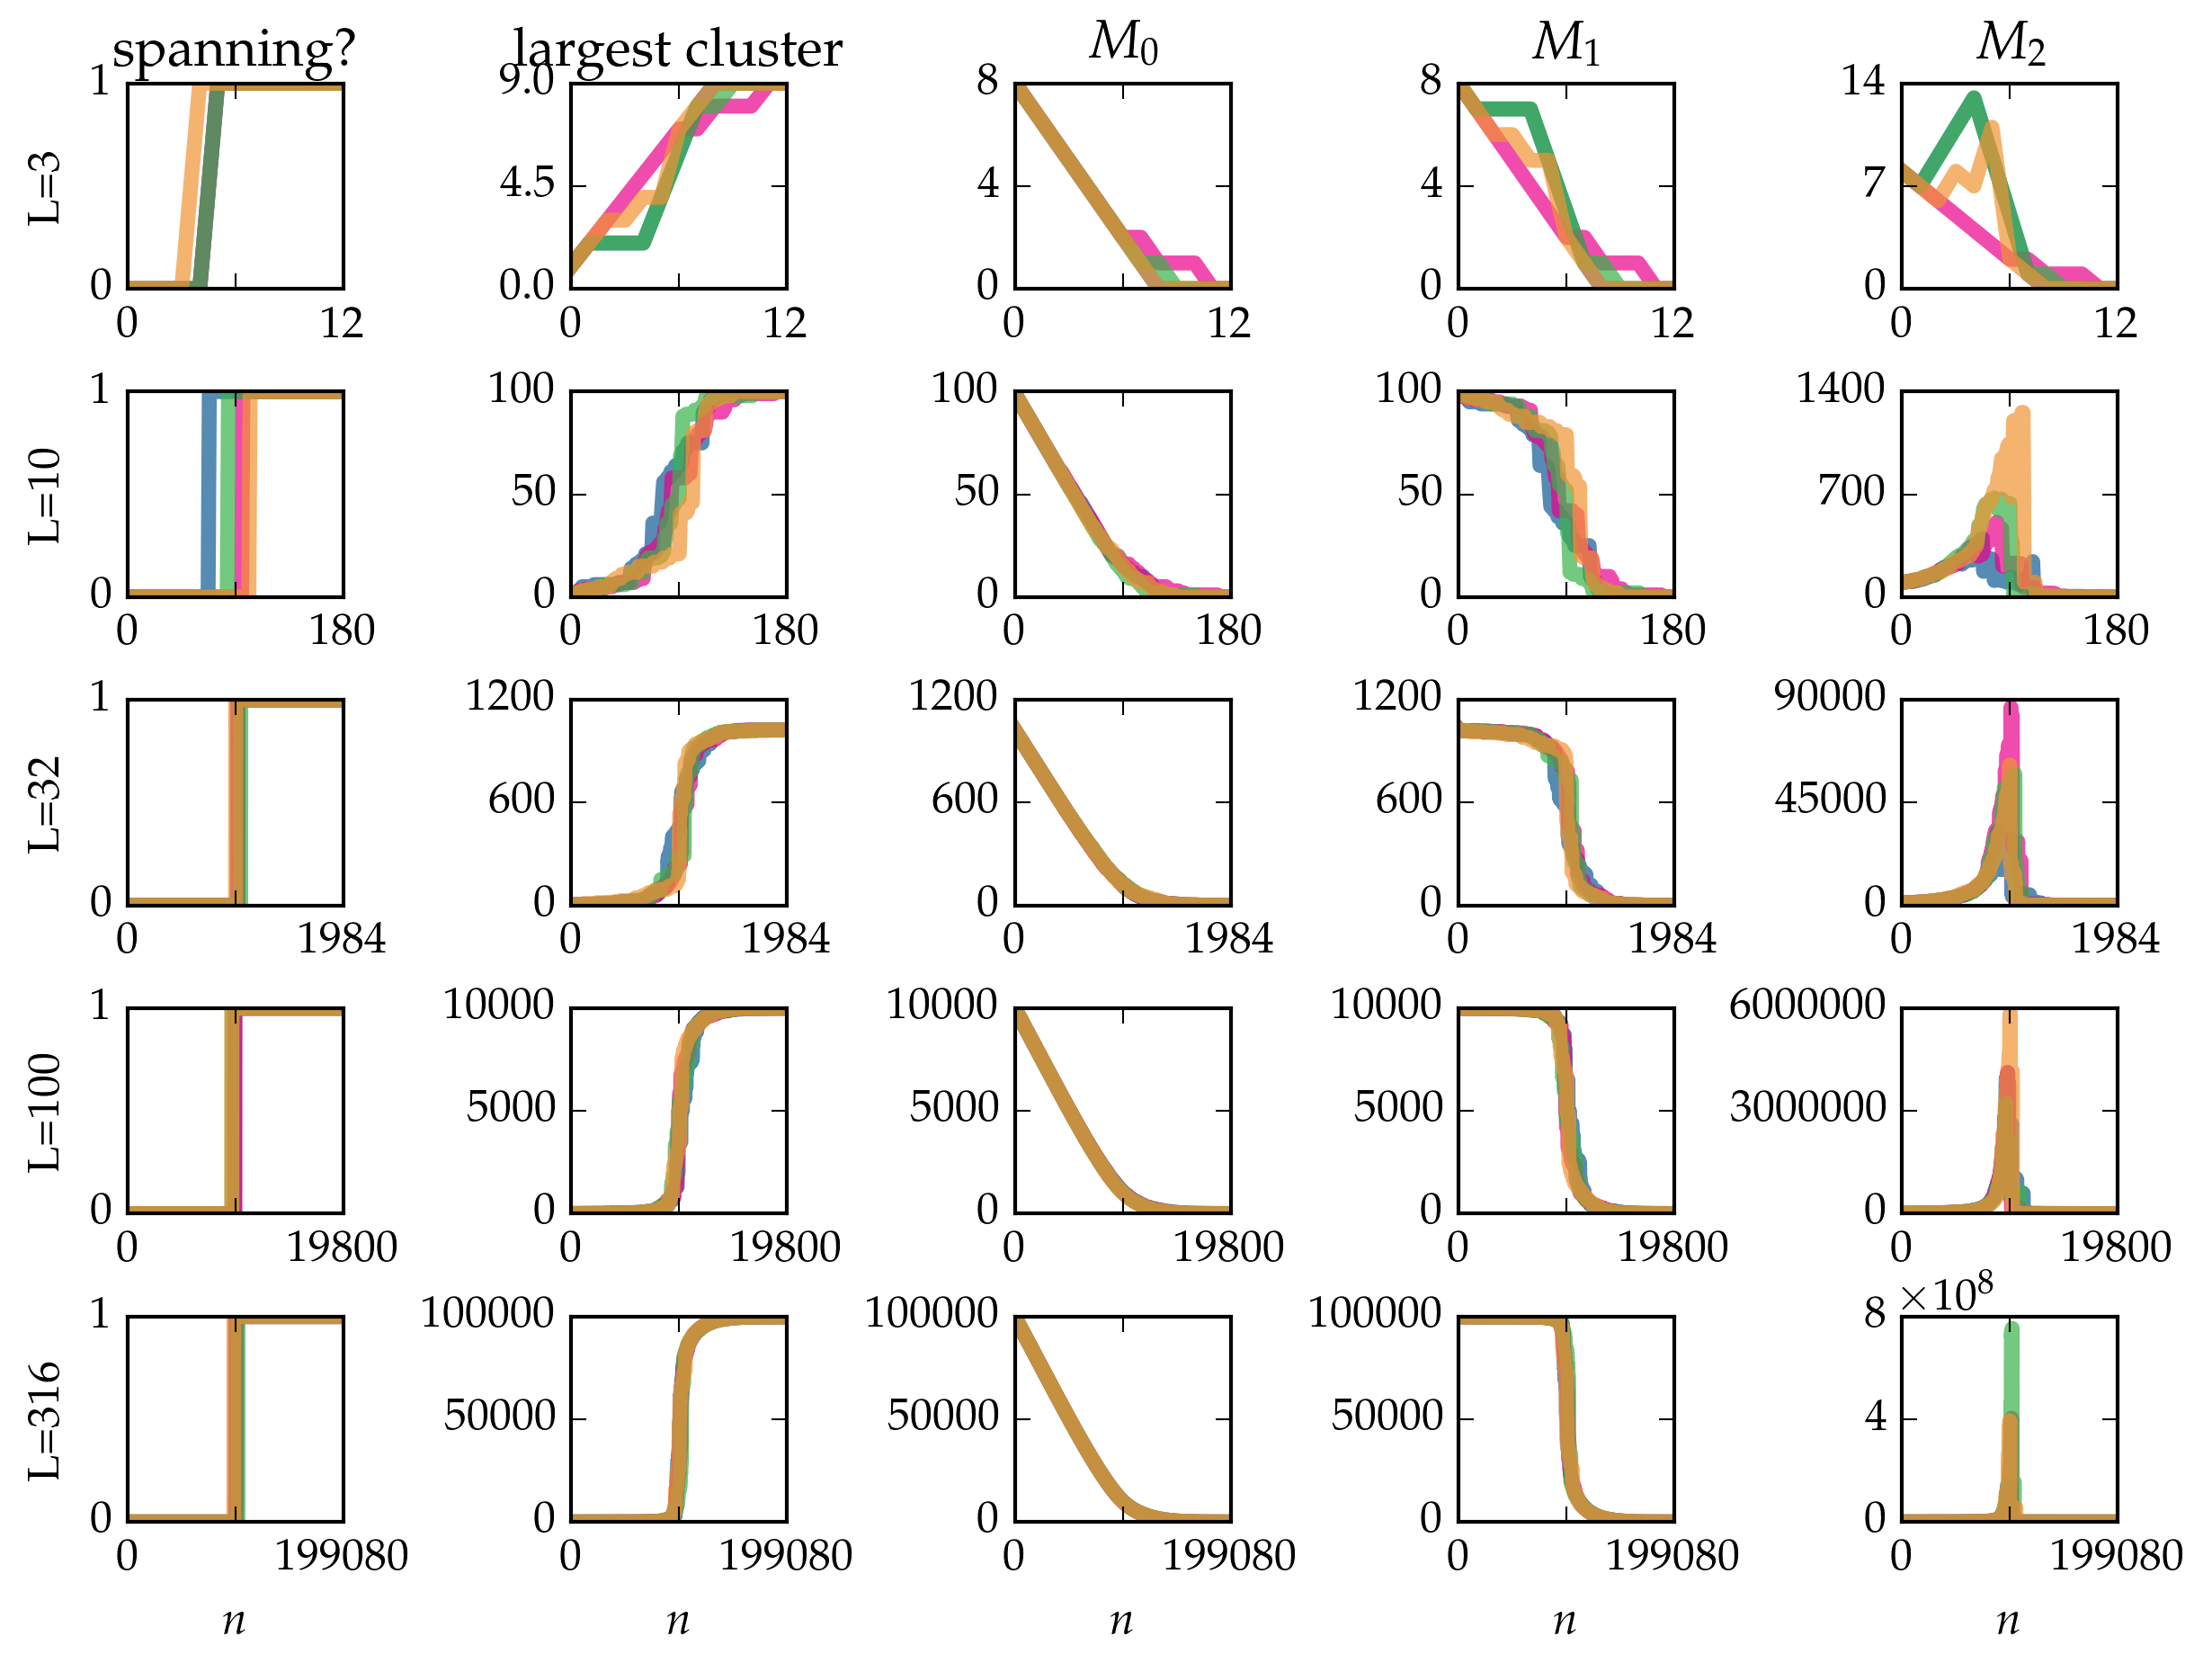 _images/tutorial-bond-square-lattice_29_0.png